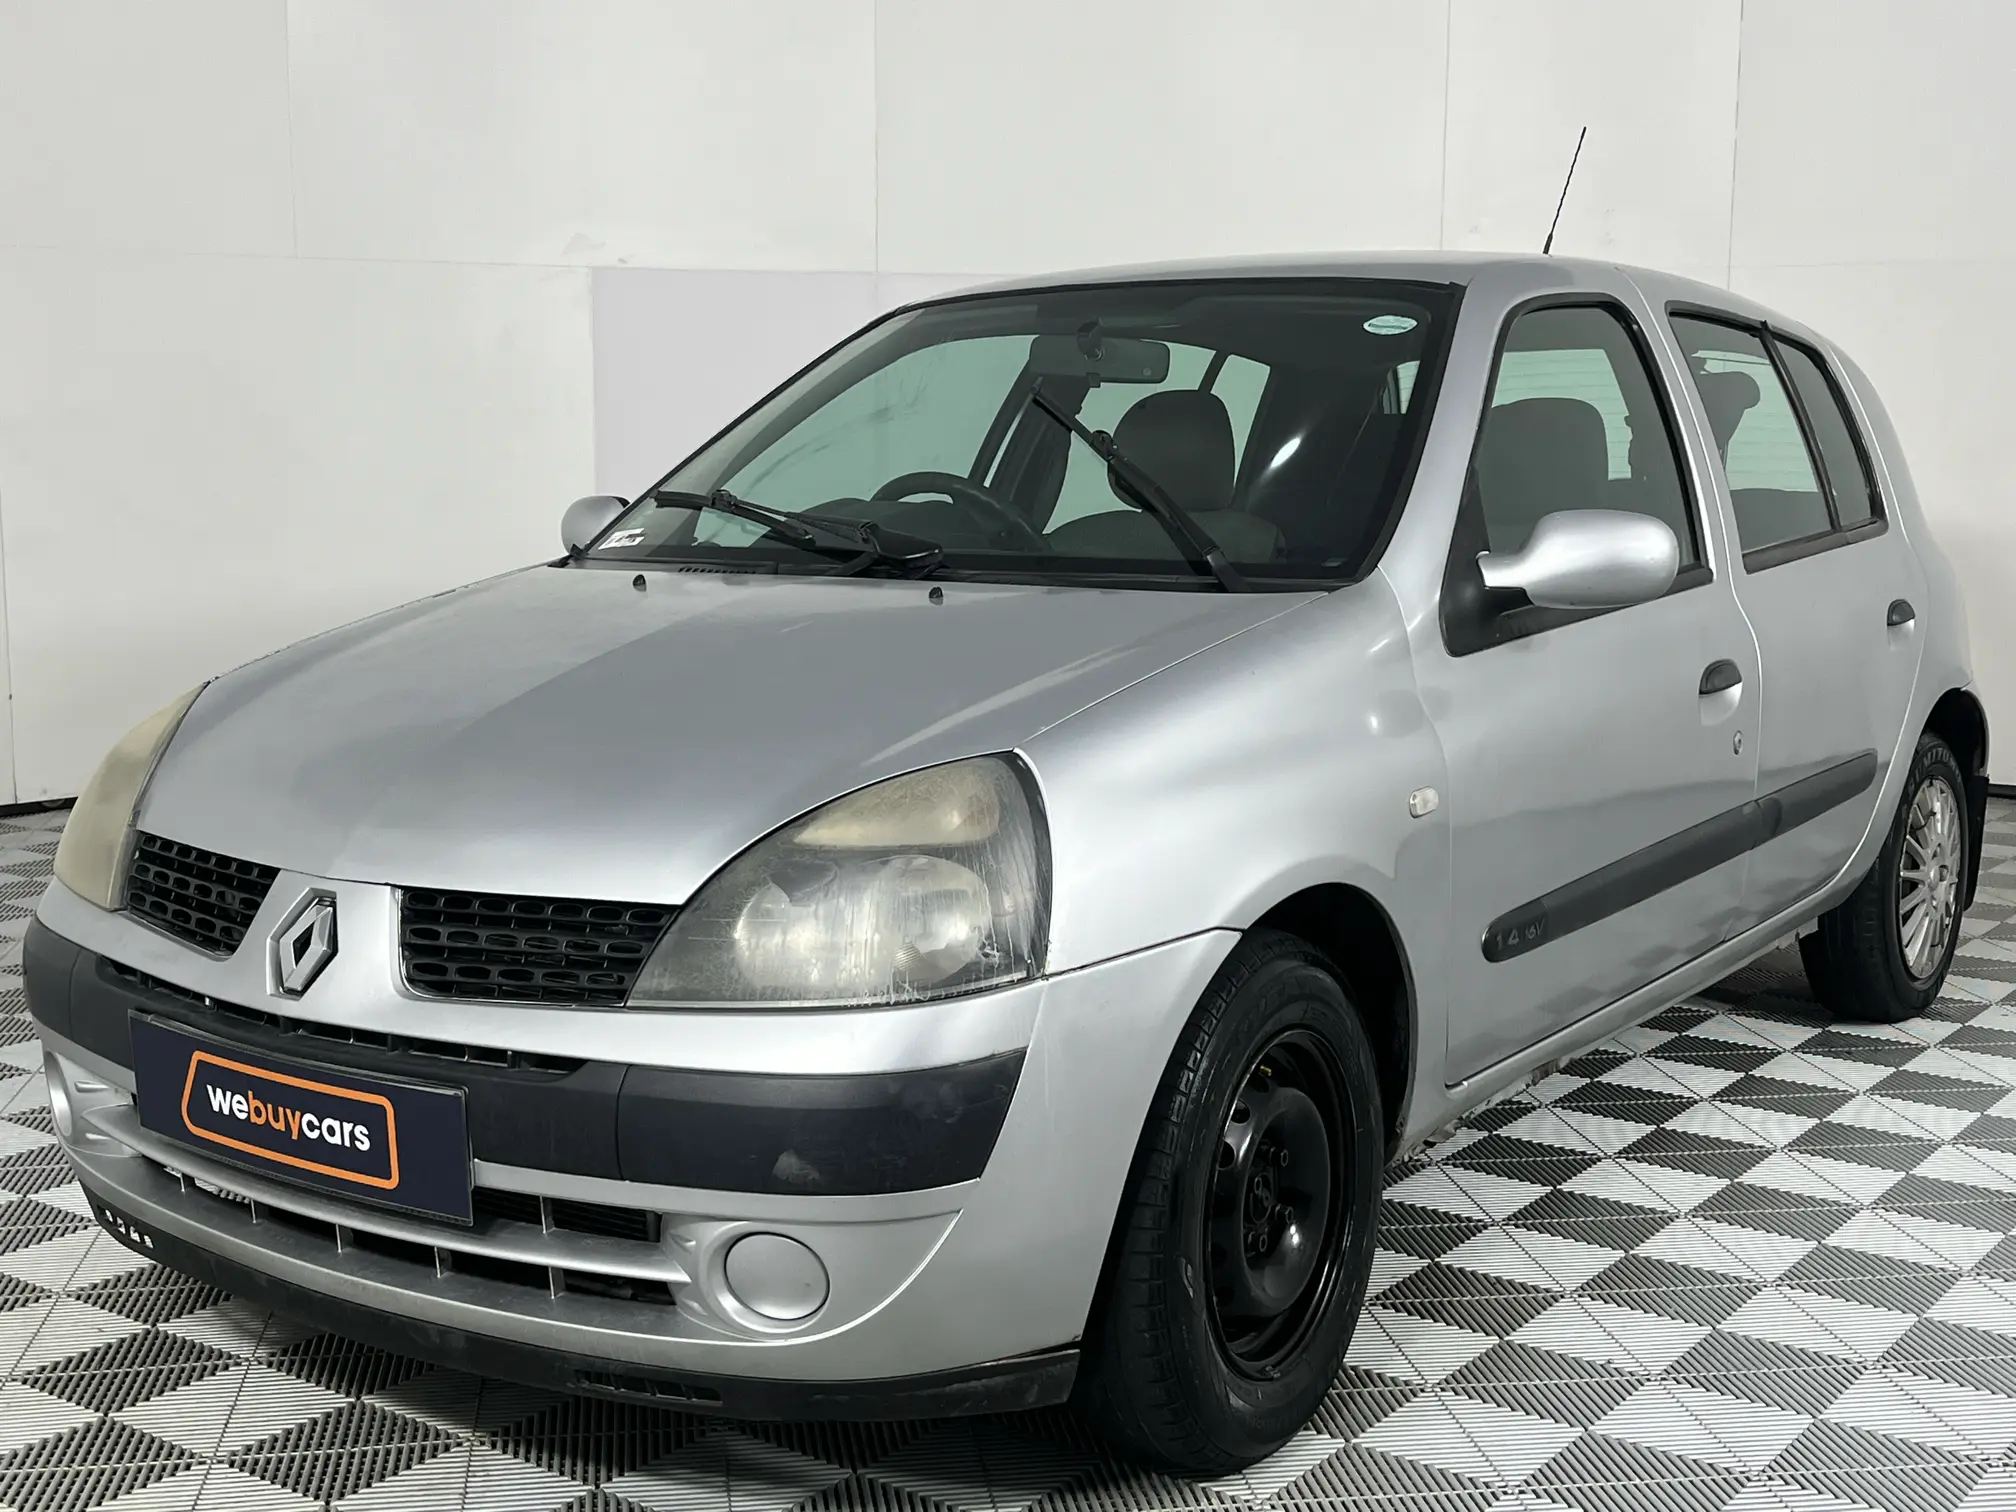 2005 Renault Clio 1.4 VA VA Voom